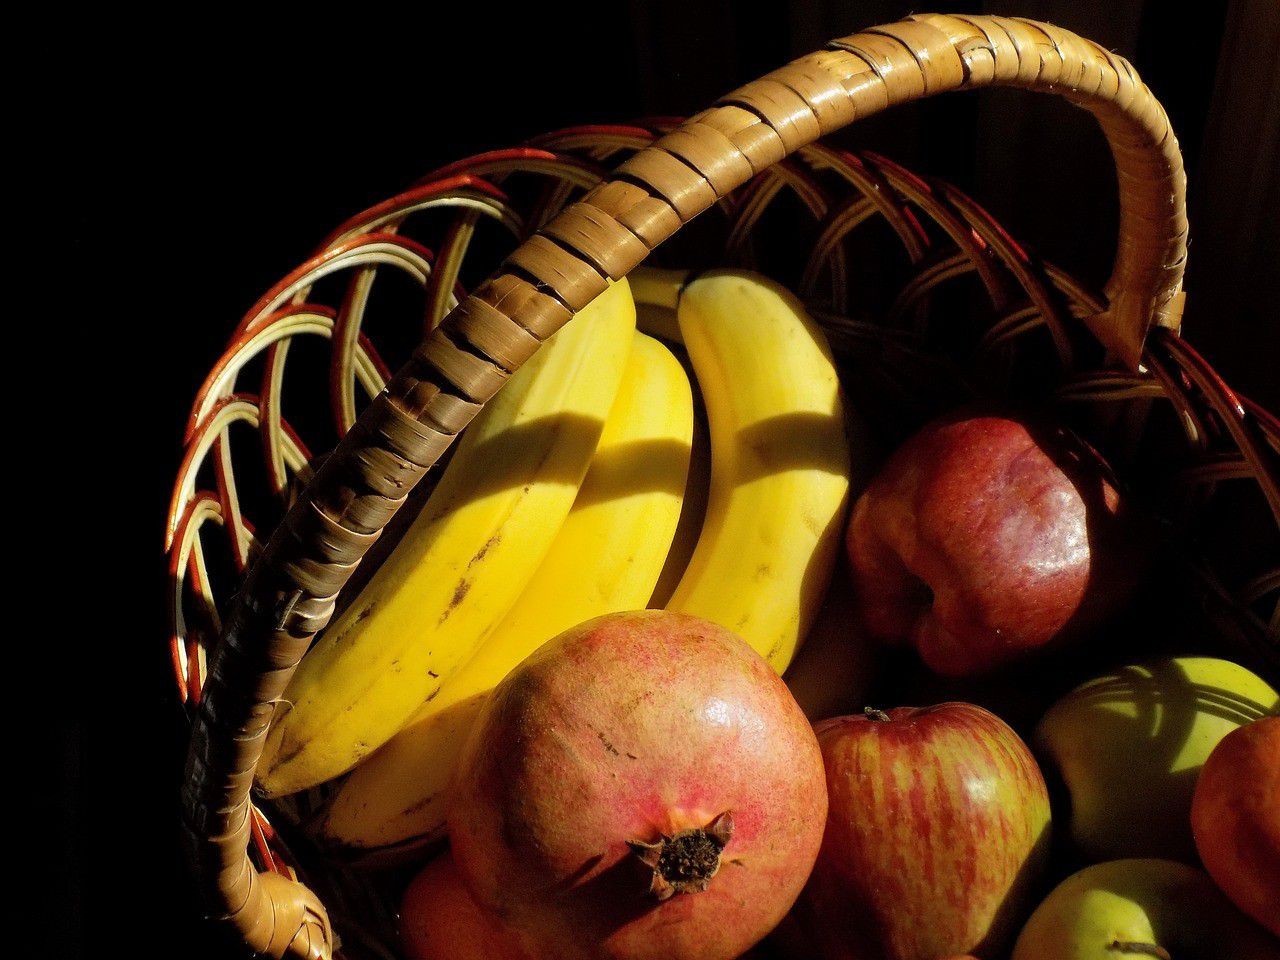 ပန်းသီး နှင့် ငှက်ပျောသီး အကြောင်း အိပ်မက် အဓိပ္ပါယ်ဖွင့်ဆိုချက်